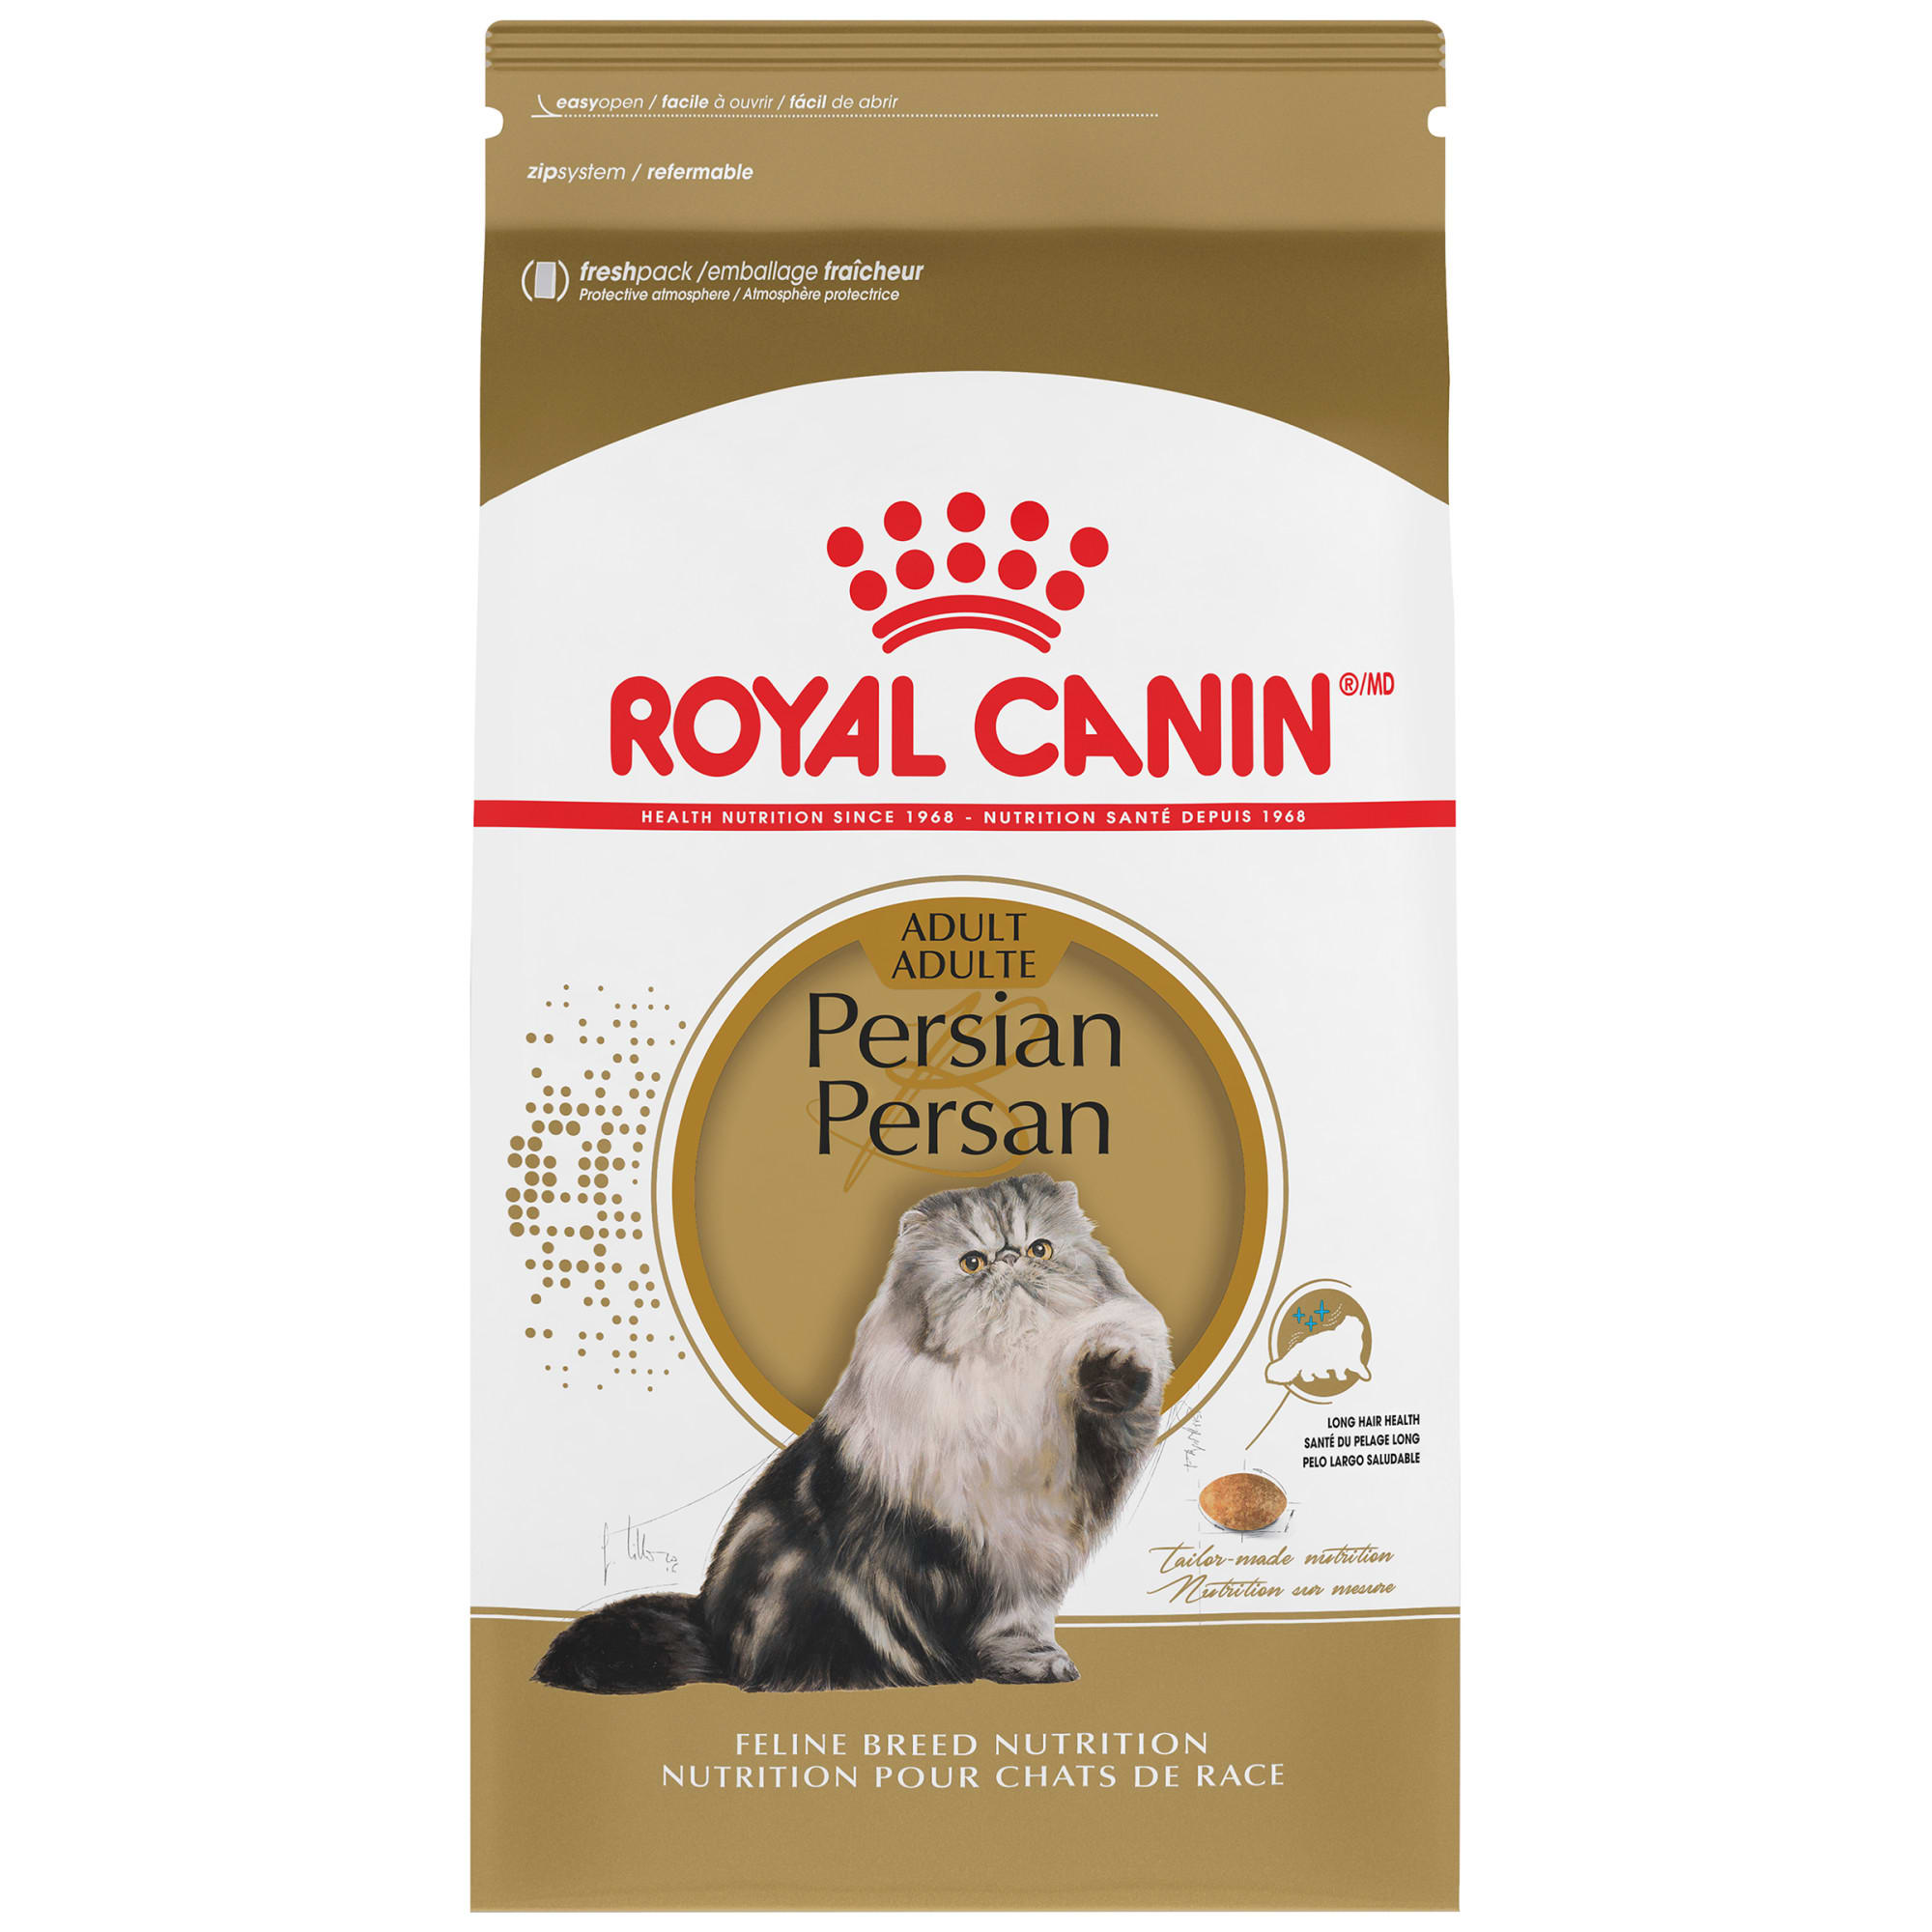 royal canin persian cat